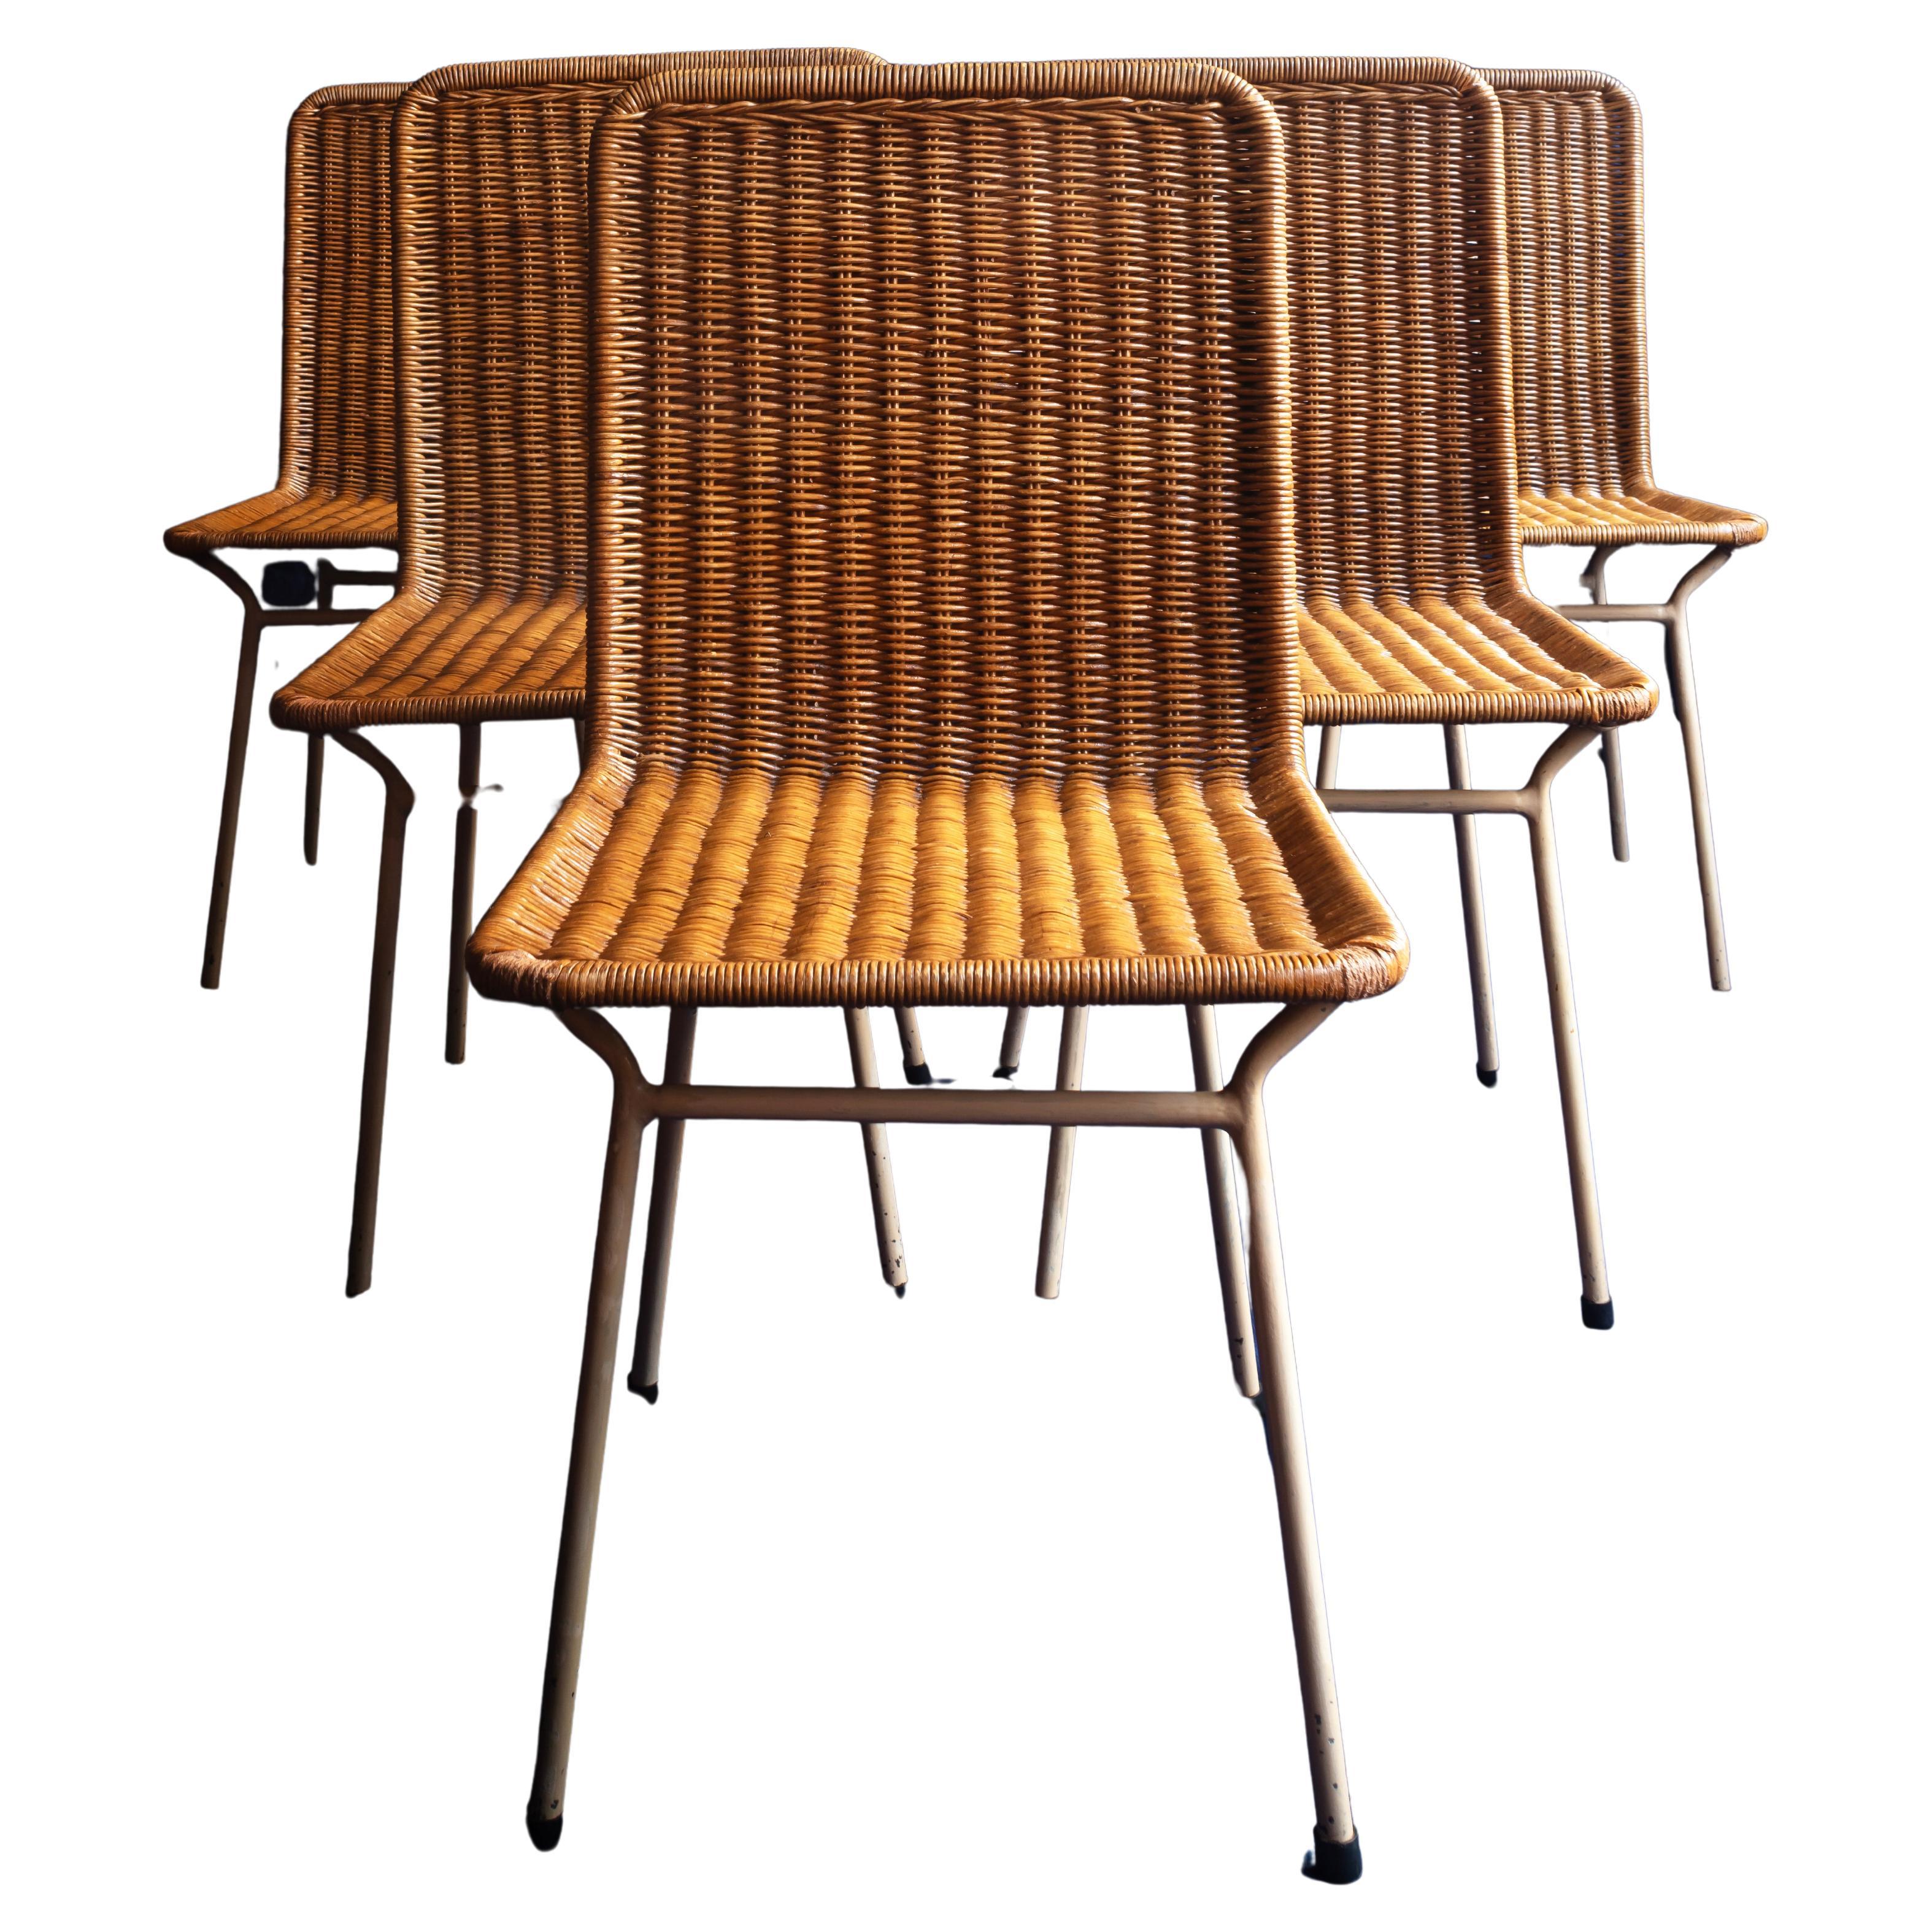 Ein seltener Satz von sechs Stühlen aus Rattan und emailliertem Eisen.
Carlo Hauner für Forma Moveis, brasilianisch, 1955.
Es ist ungewöhnlich, ein gutes Set dieser Stühle von einem Meister des italienischen/brasilianischen Designs zu finden. Dieses